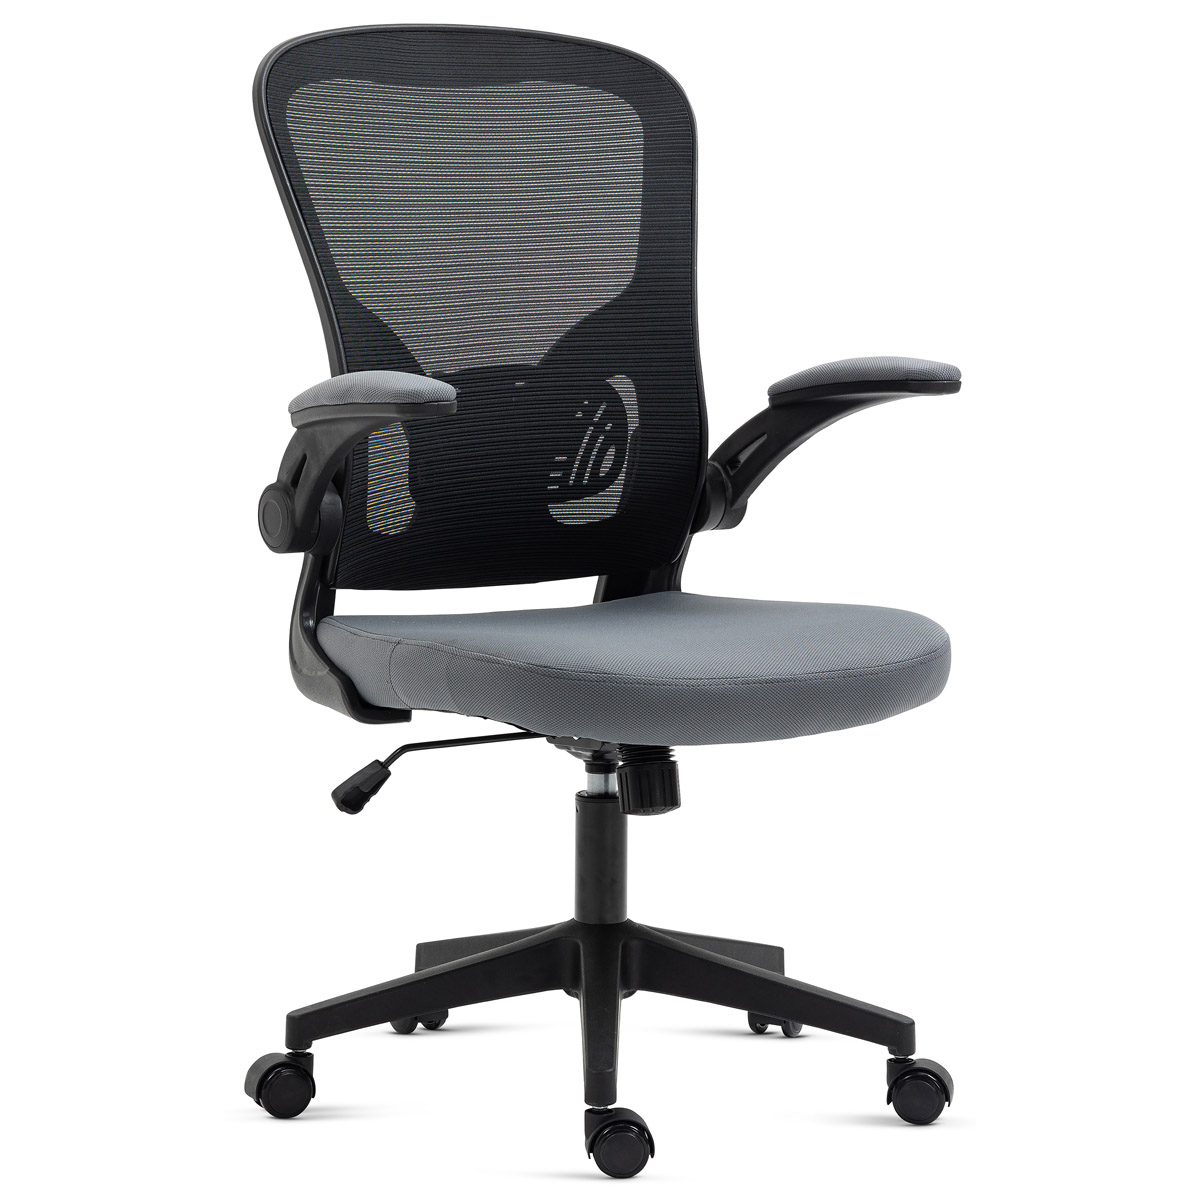 Kancelářská židle, černý plast, šedá látka, sklápěcí područky, kolečka pro tvrdé